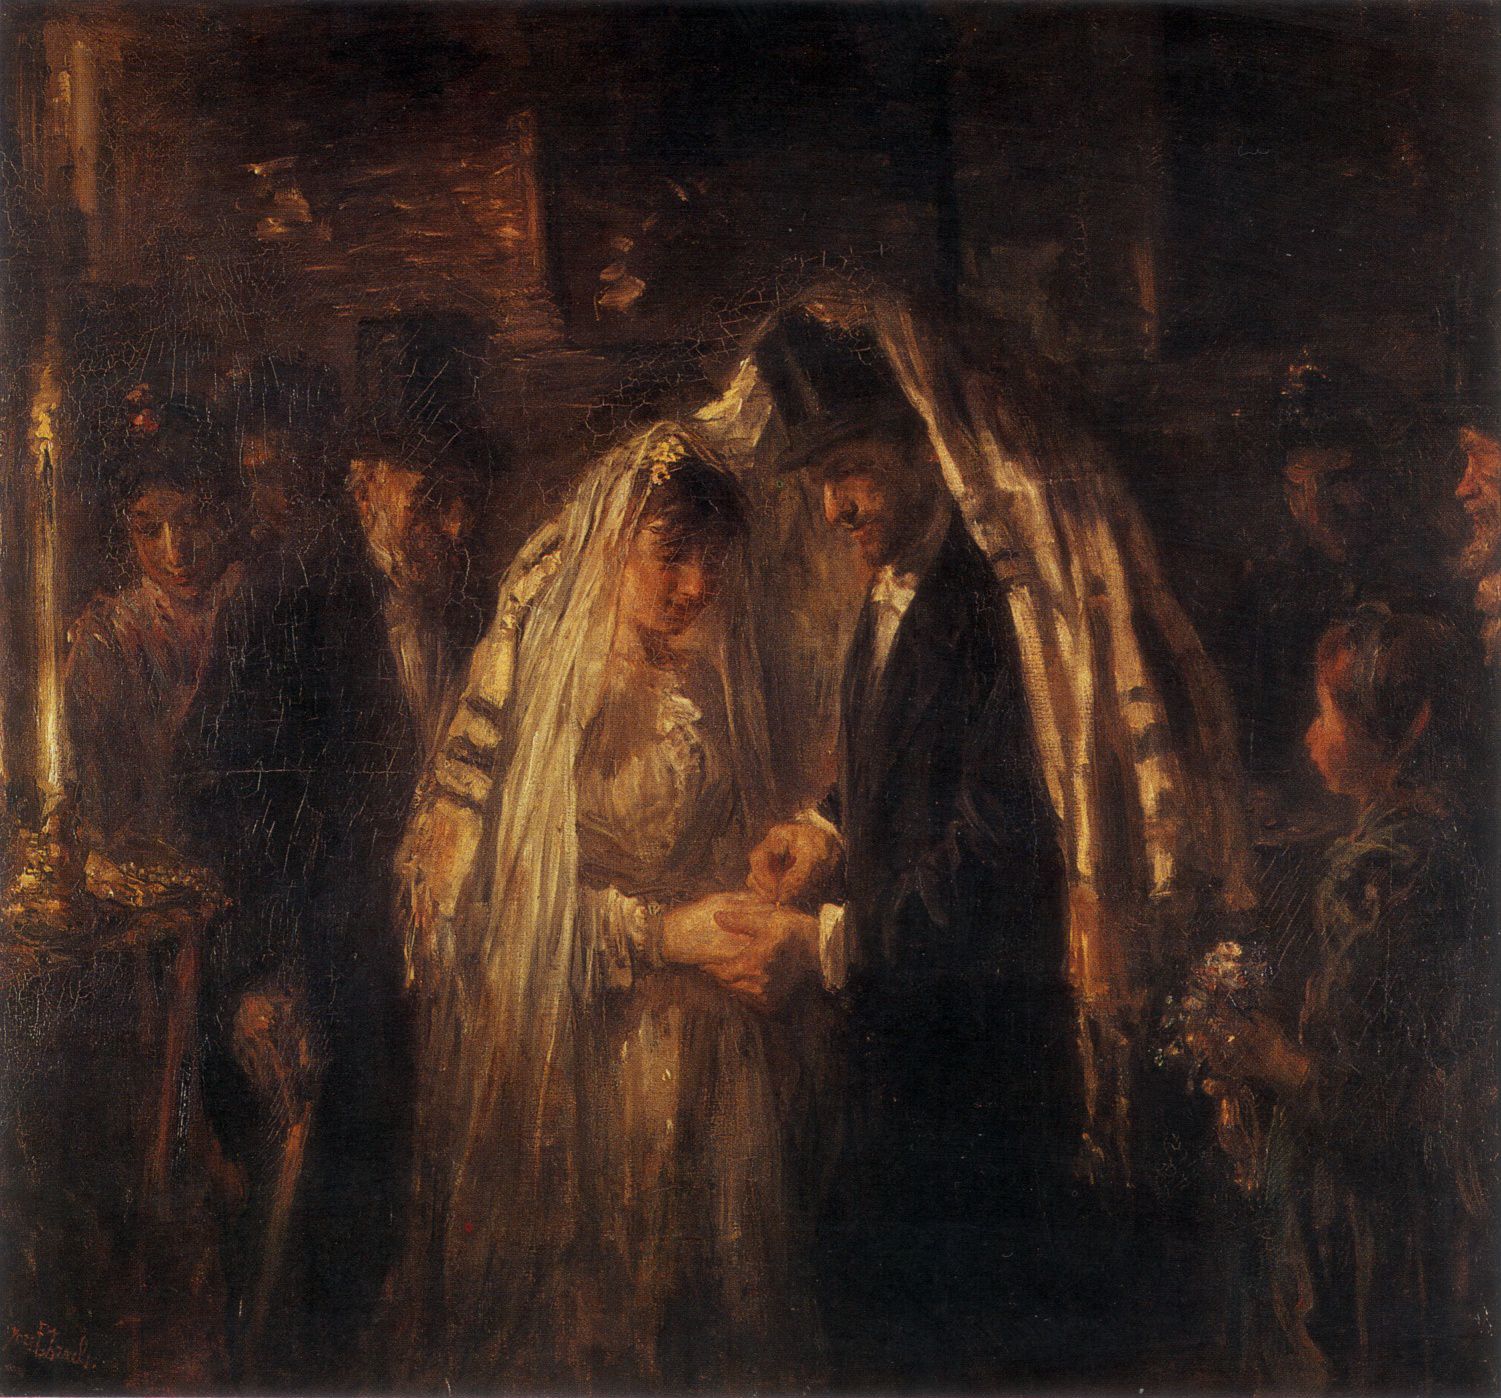 A Jewish Wedding by Josef Israels, 1903